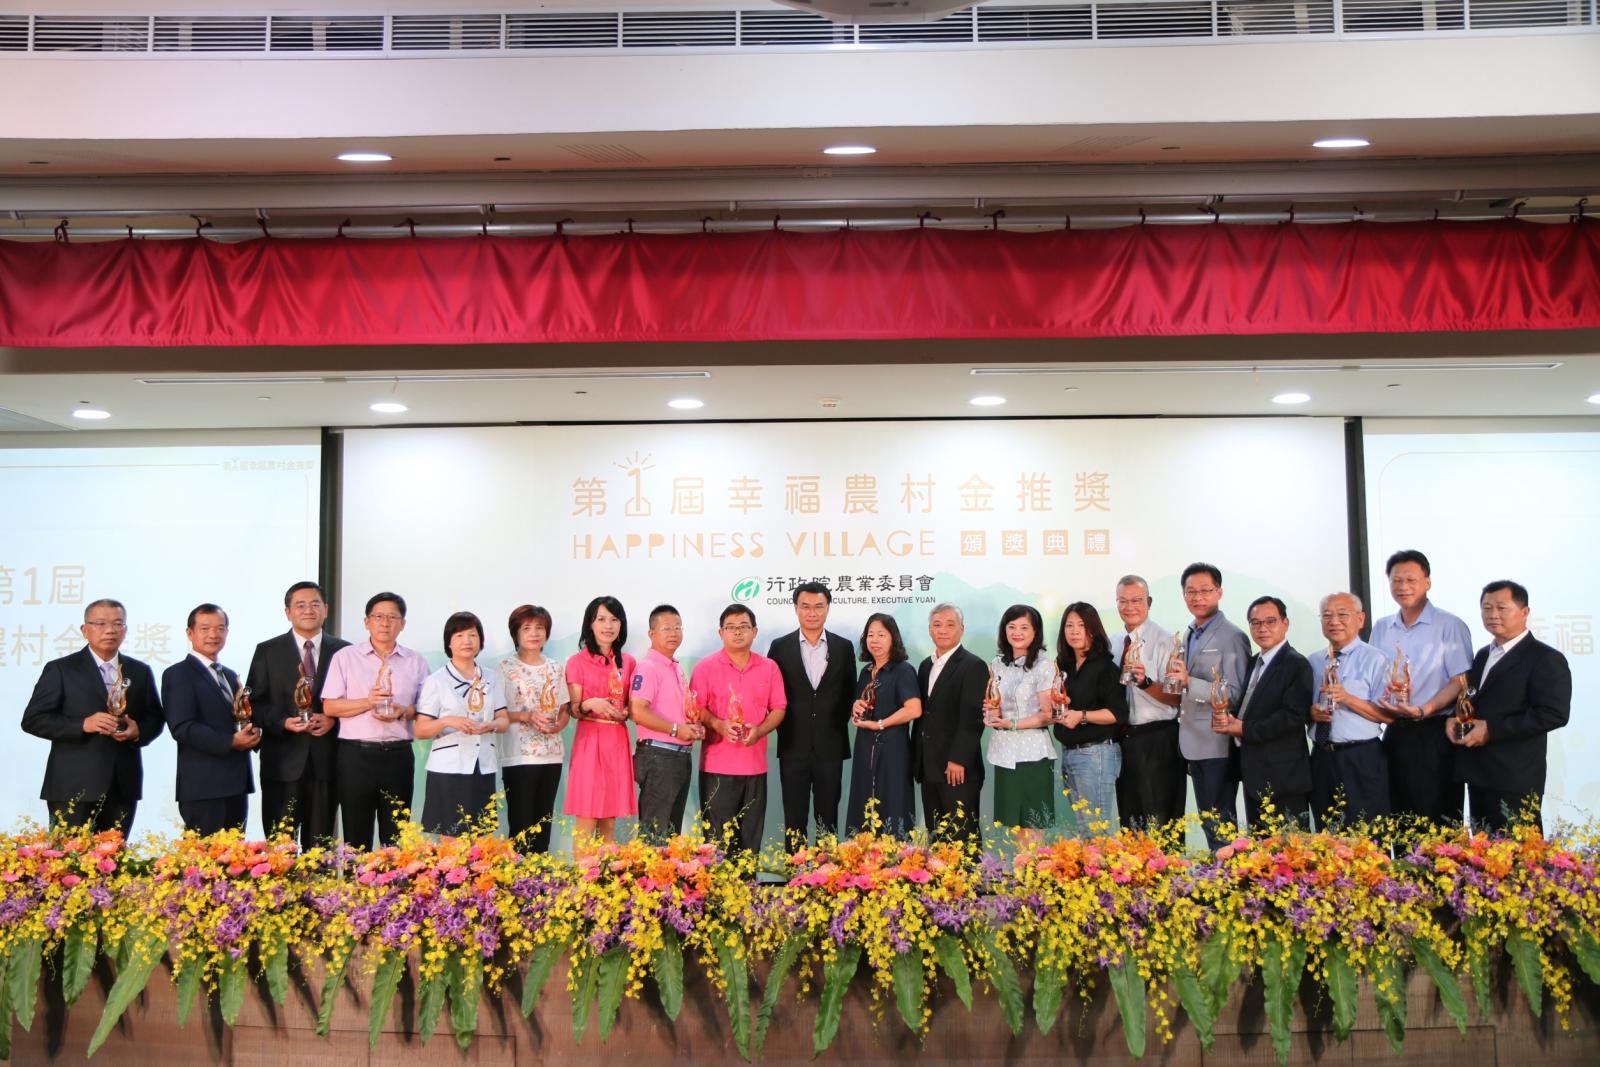 行政院農委會陳吉仲主委與得獎的3家縣級農會及15家基層農會代表合影。